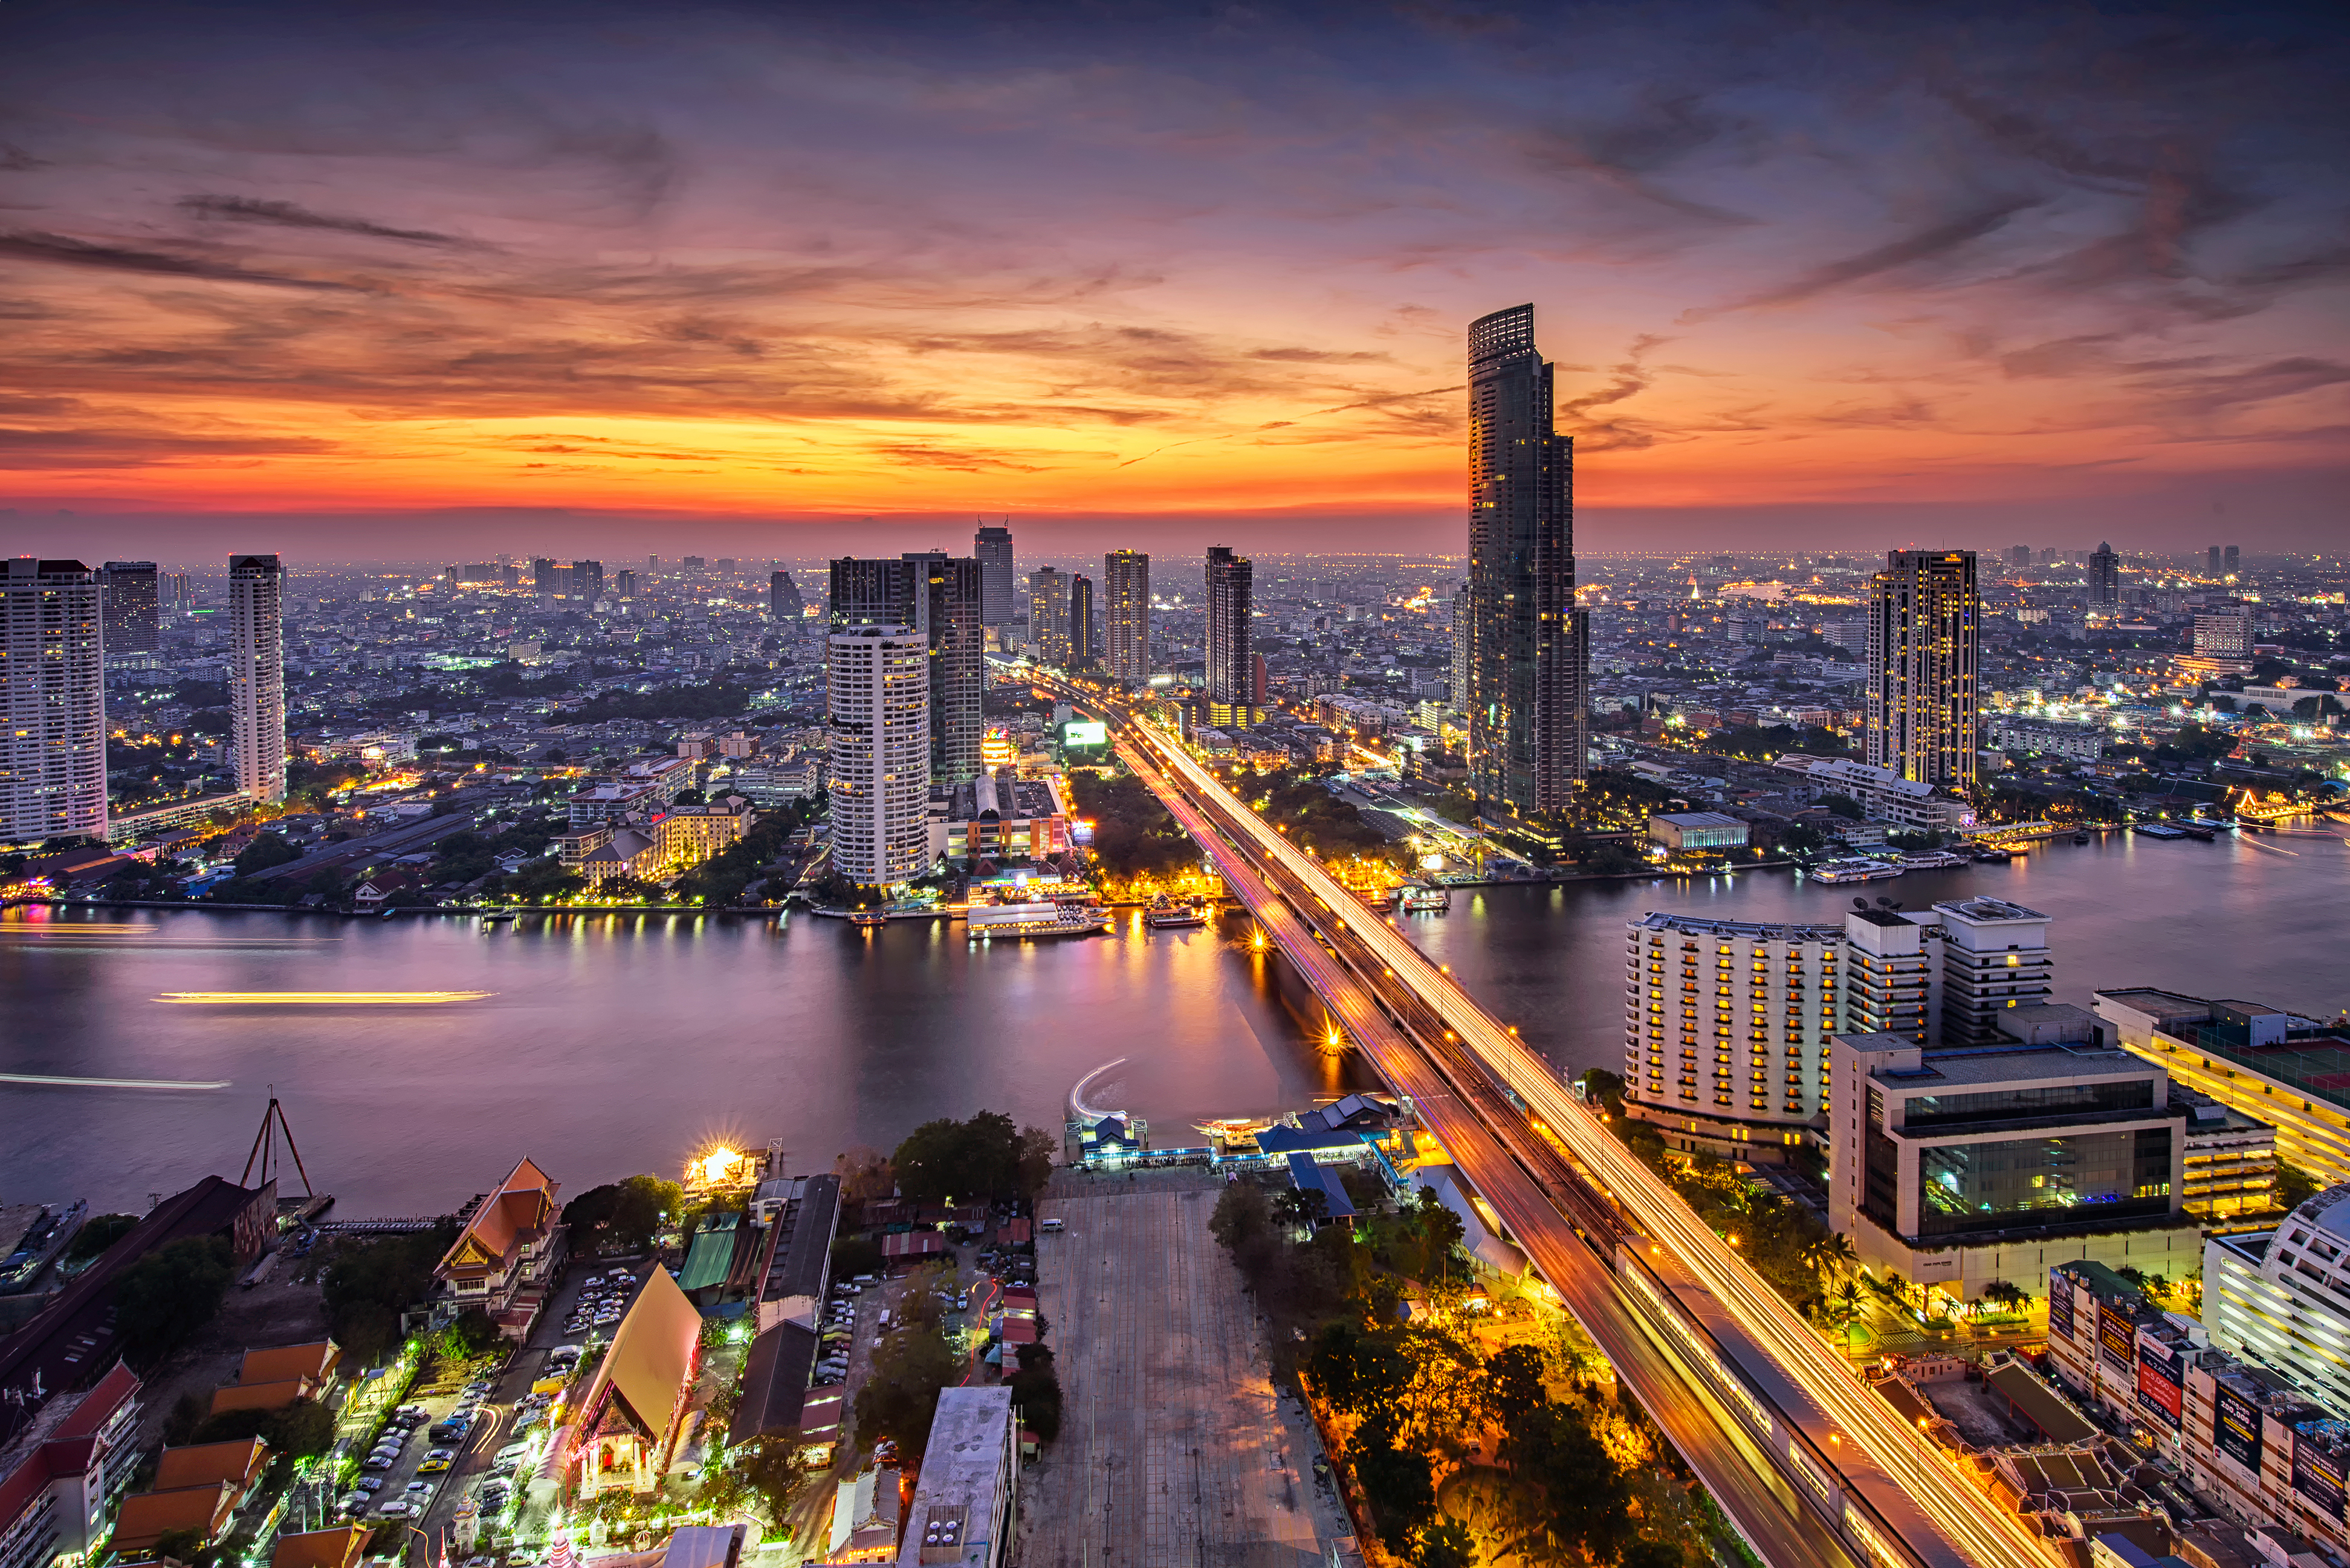 The city of Bangkok at night